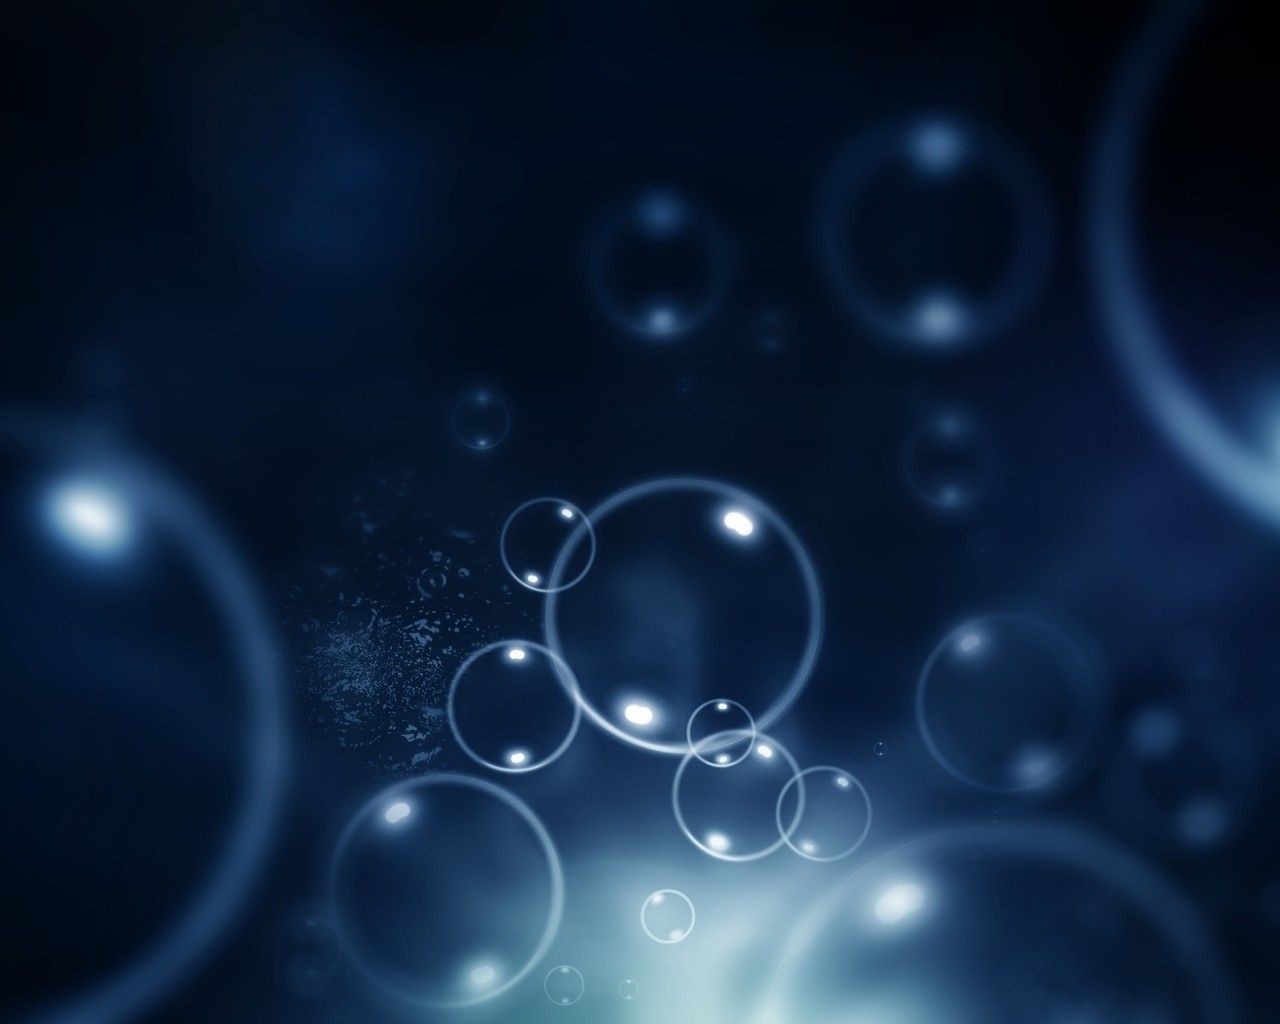 HD wallpaper, Picture, Blue, Bubbles